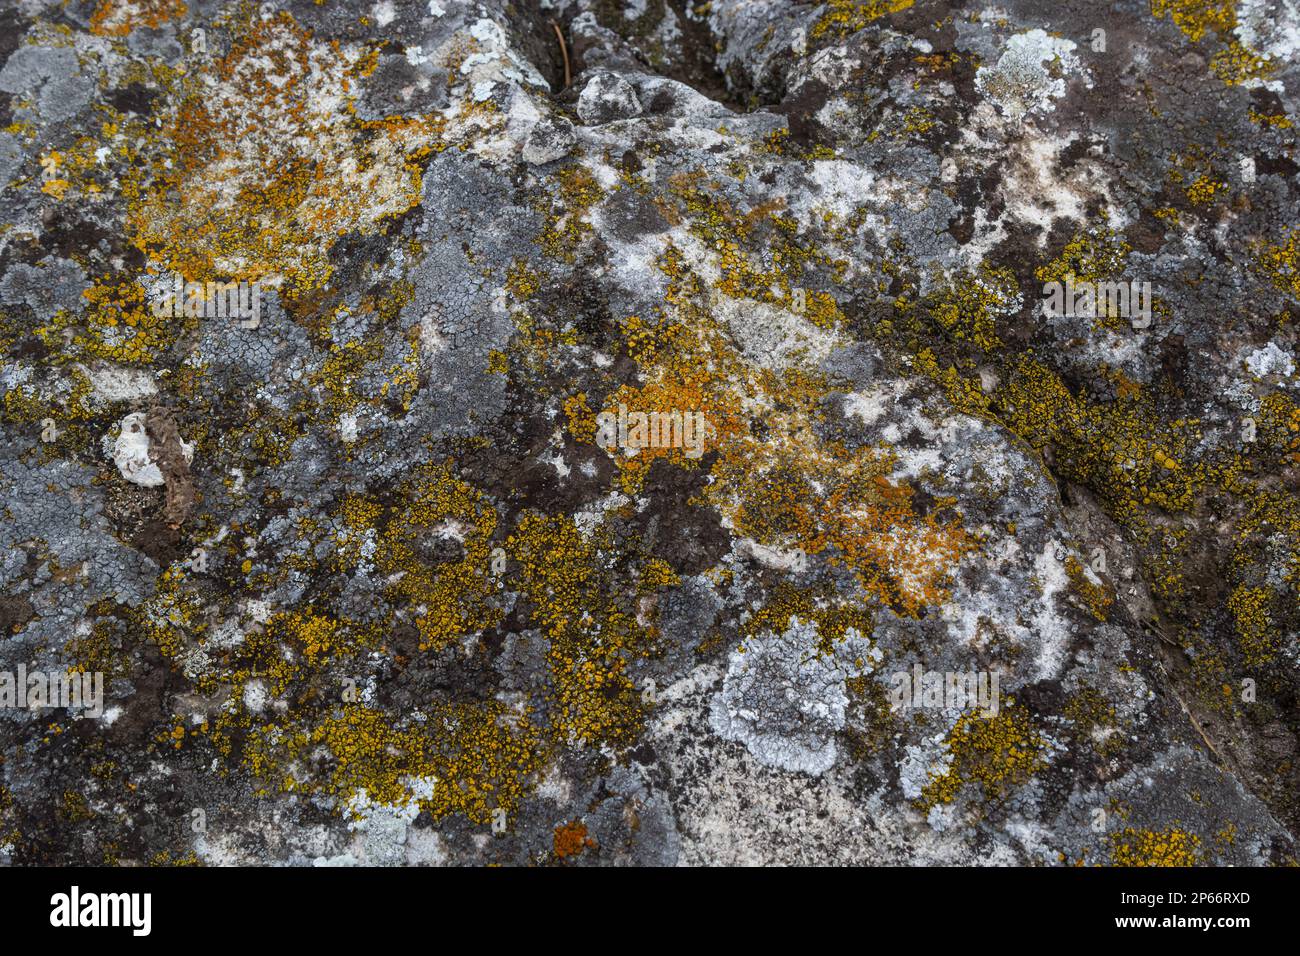 Close up of Xanthoria parietina. Yellow lichen on the bark of a tree. common orange lichen, yellow scale, maritime sunburst lichen and shore lichen. Stock Photo